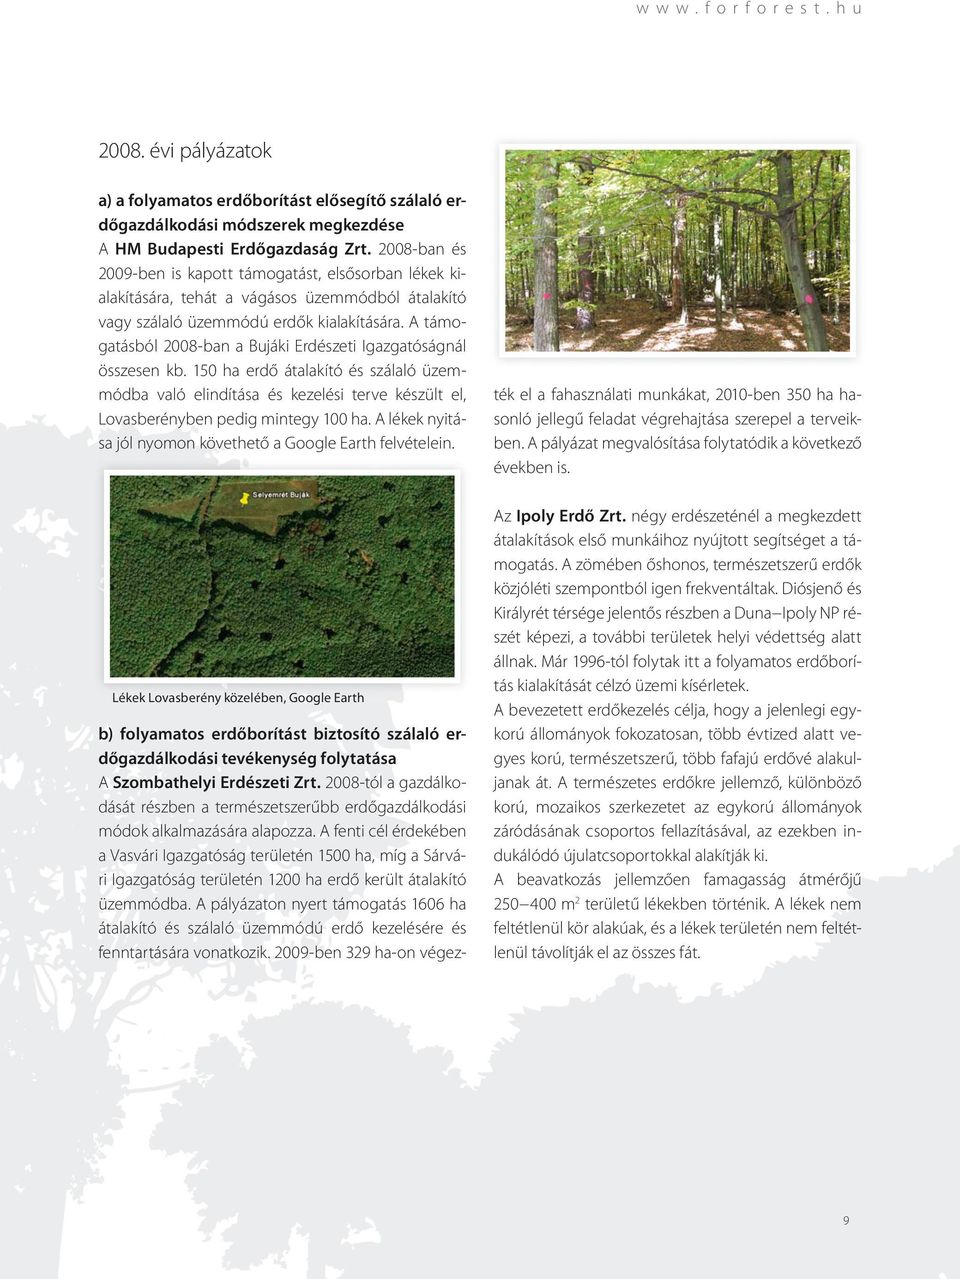 A támogatásból 2008-ban a Bujáki Erdészeti Igazgatóságnál összesen kb. 150 ha erdő átalakító és szálaló üzemmódba való elindítása és kezelési terve készült el, Lovasberényben pedig mintegy 100 ha.